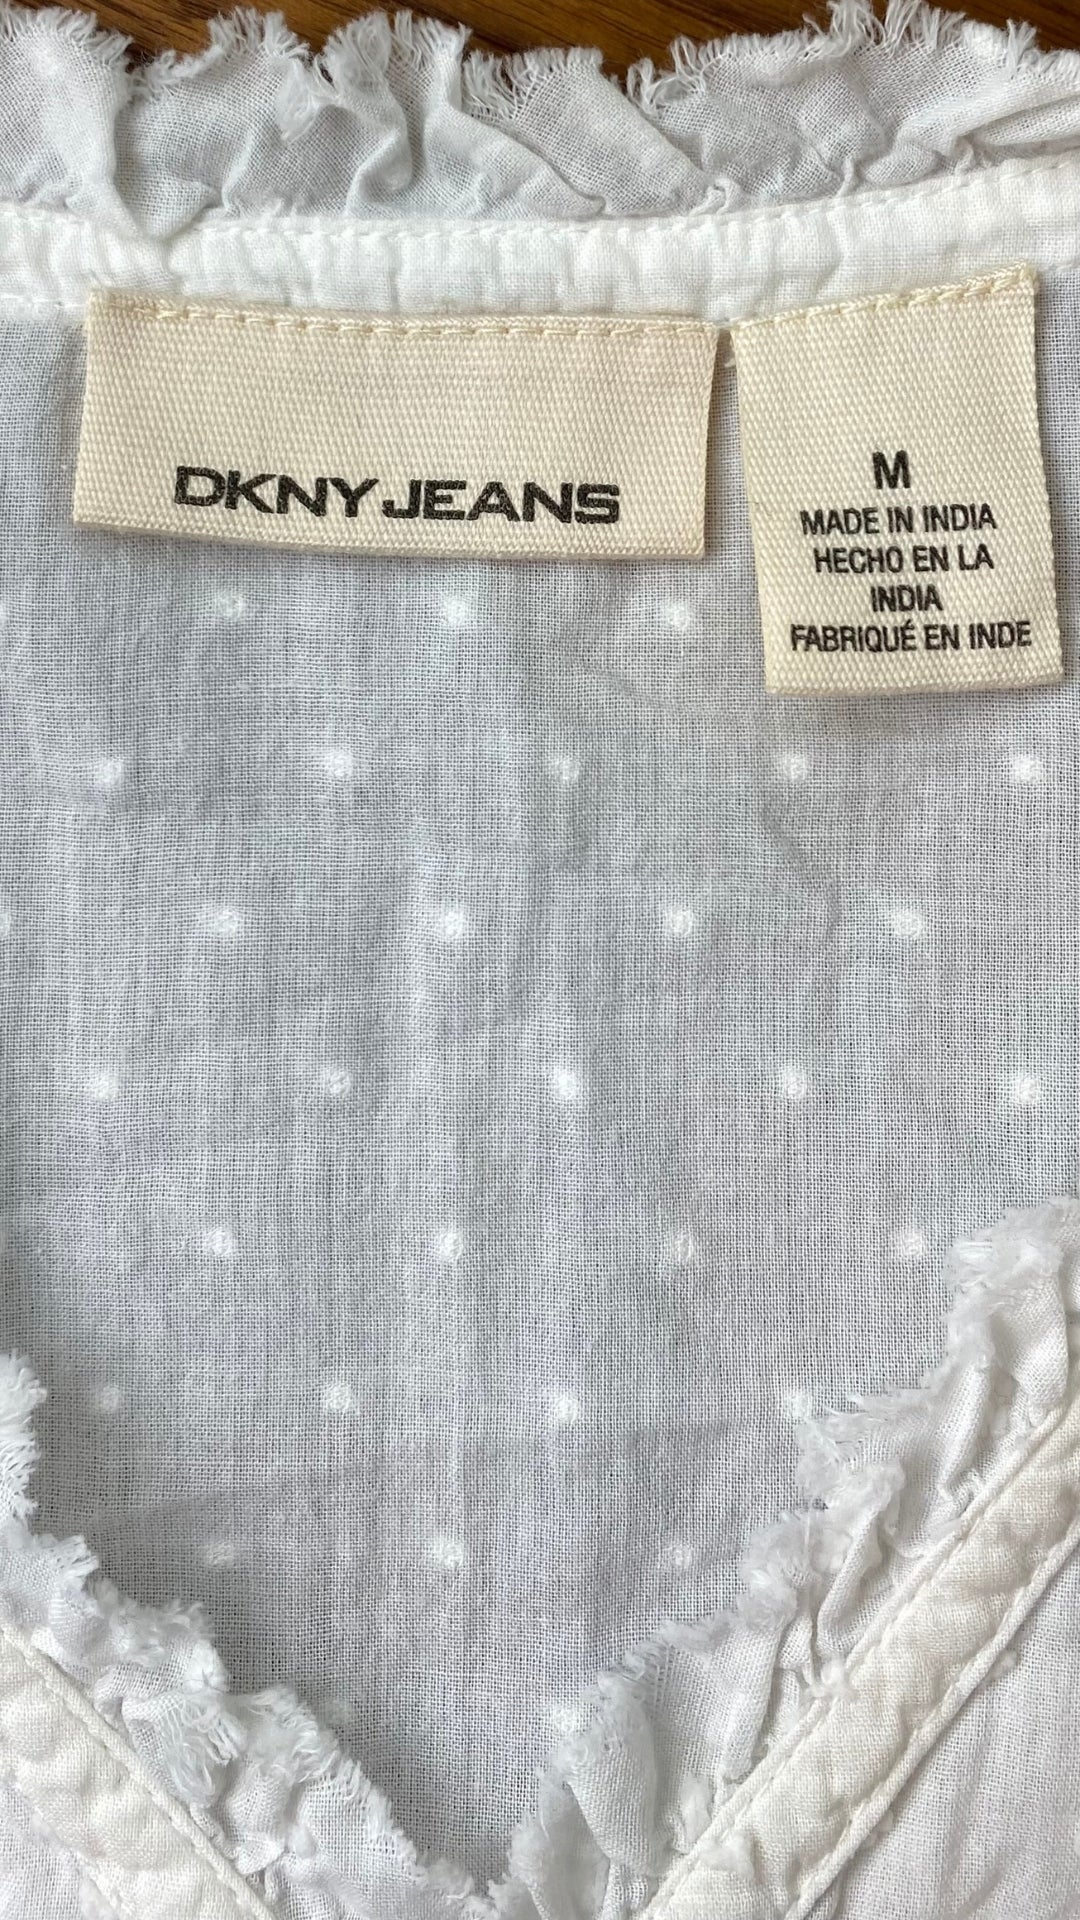 Haut ample crème avec détails DKNY jeans, taille medium. Vue de l'étiquette de marque et taille.